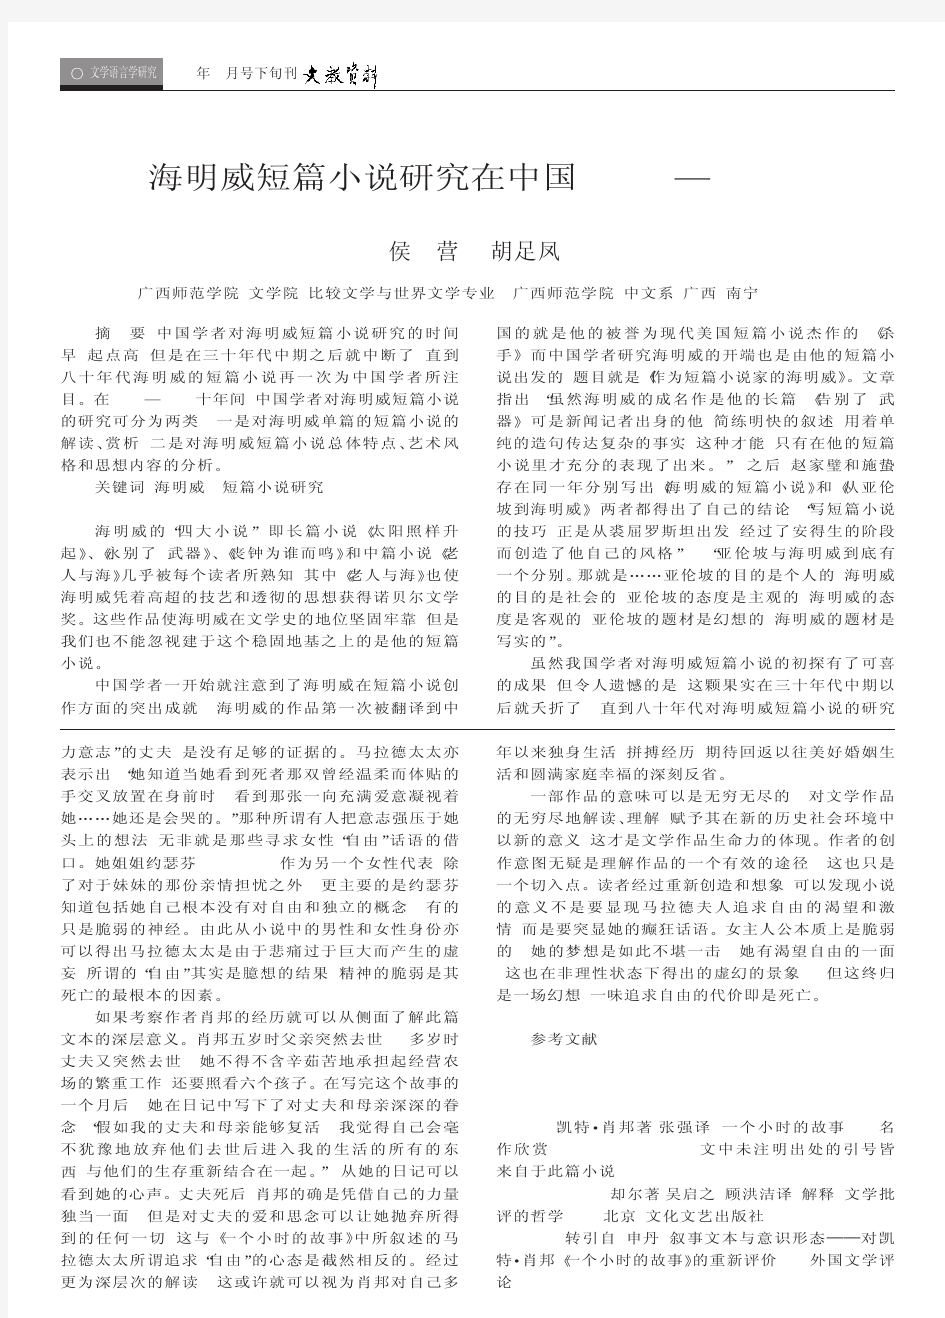 海明威短篇小说研究在中国(1979-1989)